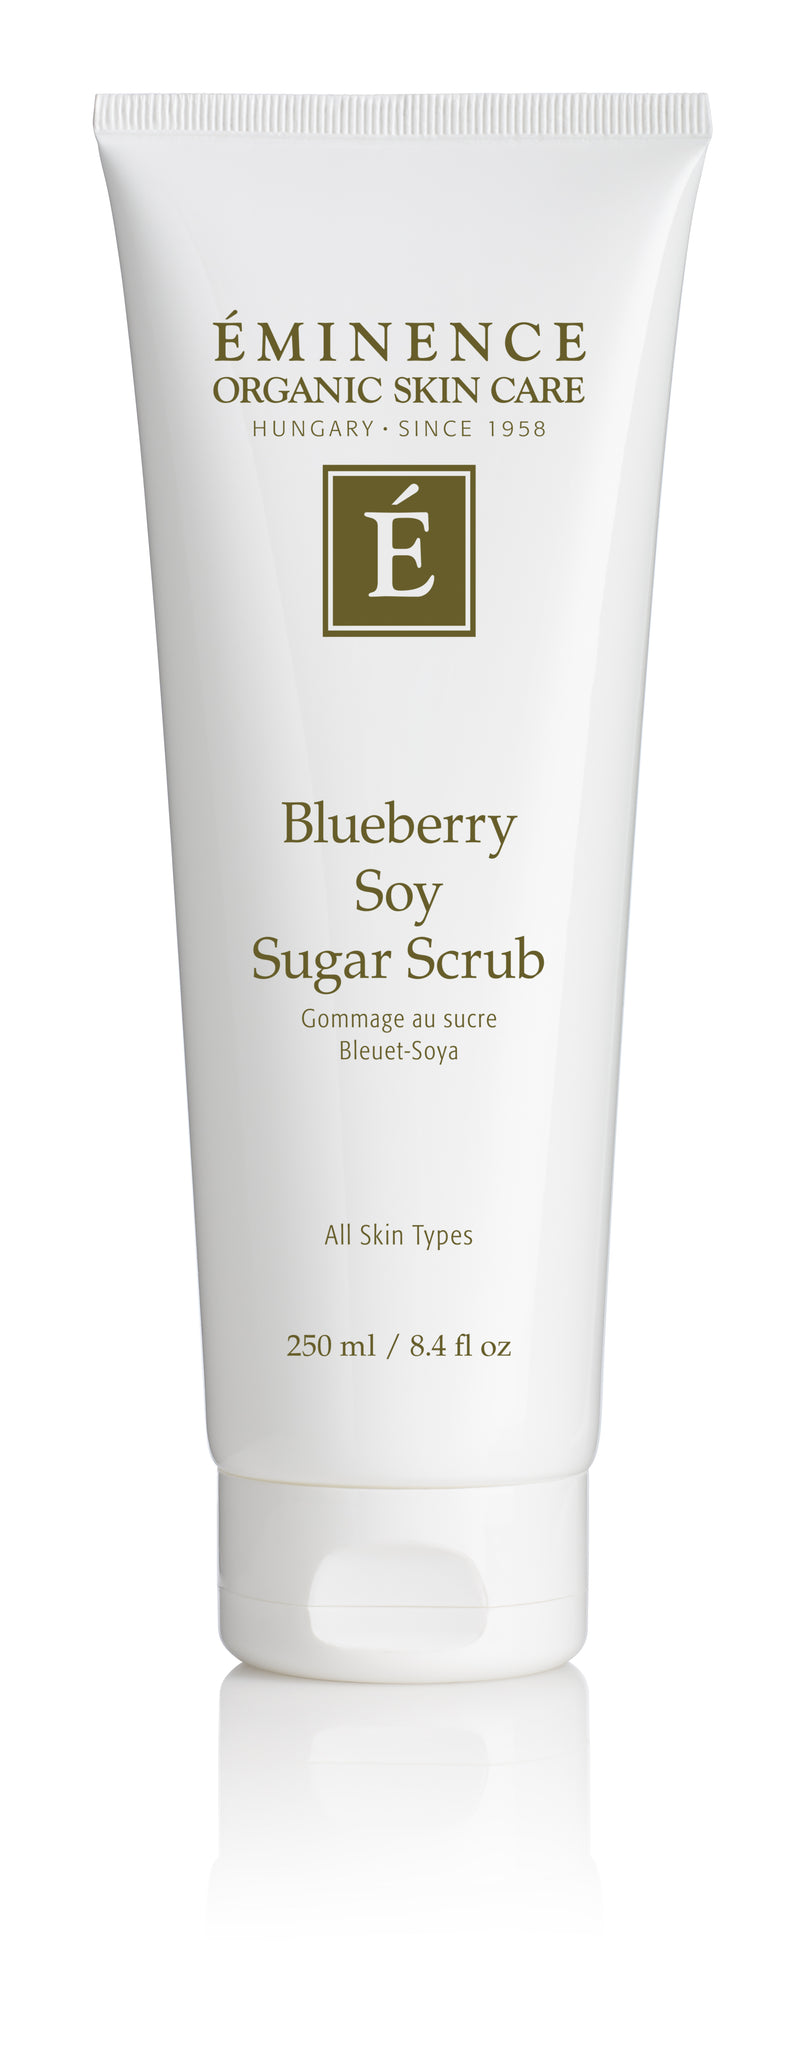 Blueberry Soy Sugar Scrub